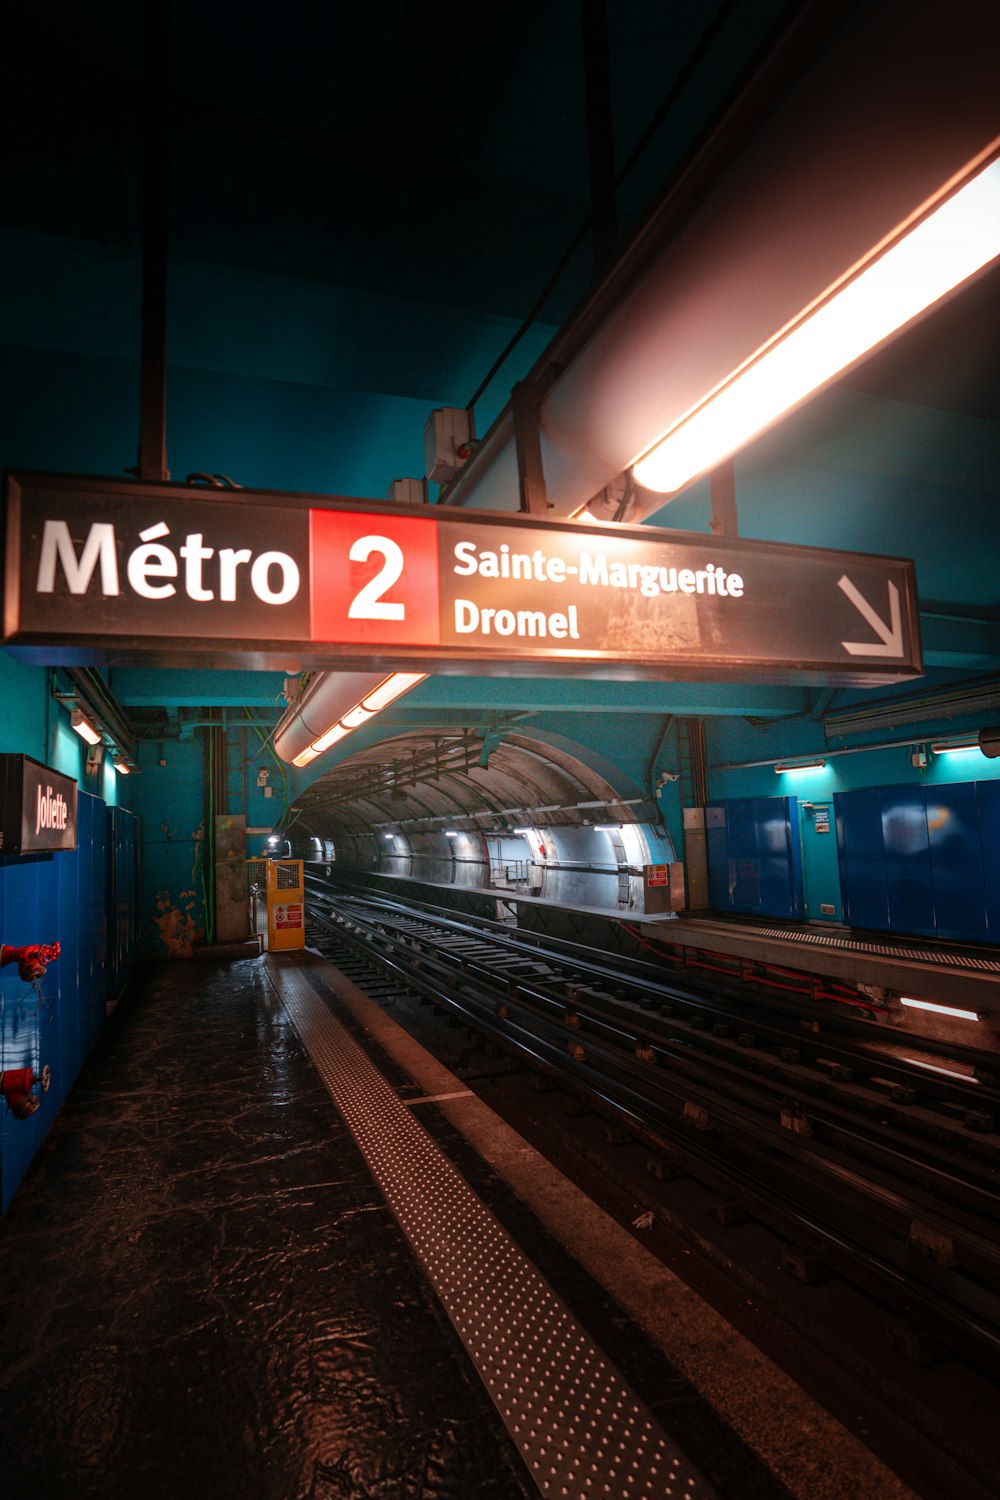 Metro 2 Sainte-Marguerite Dromet subway signage